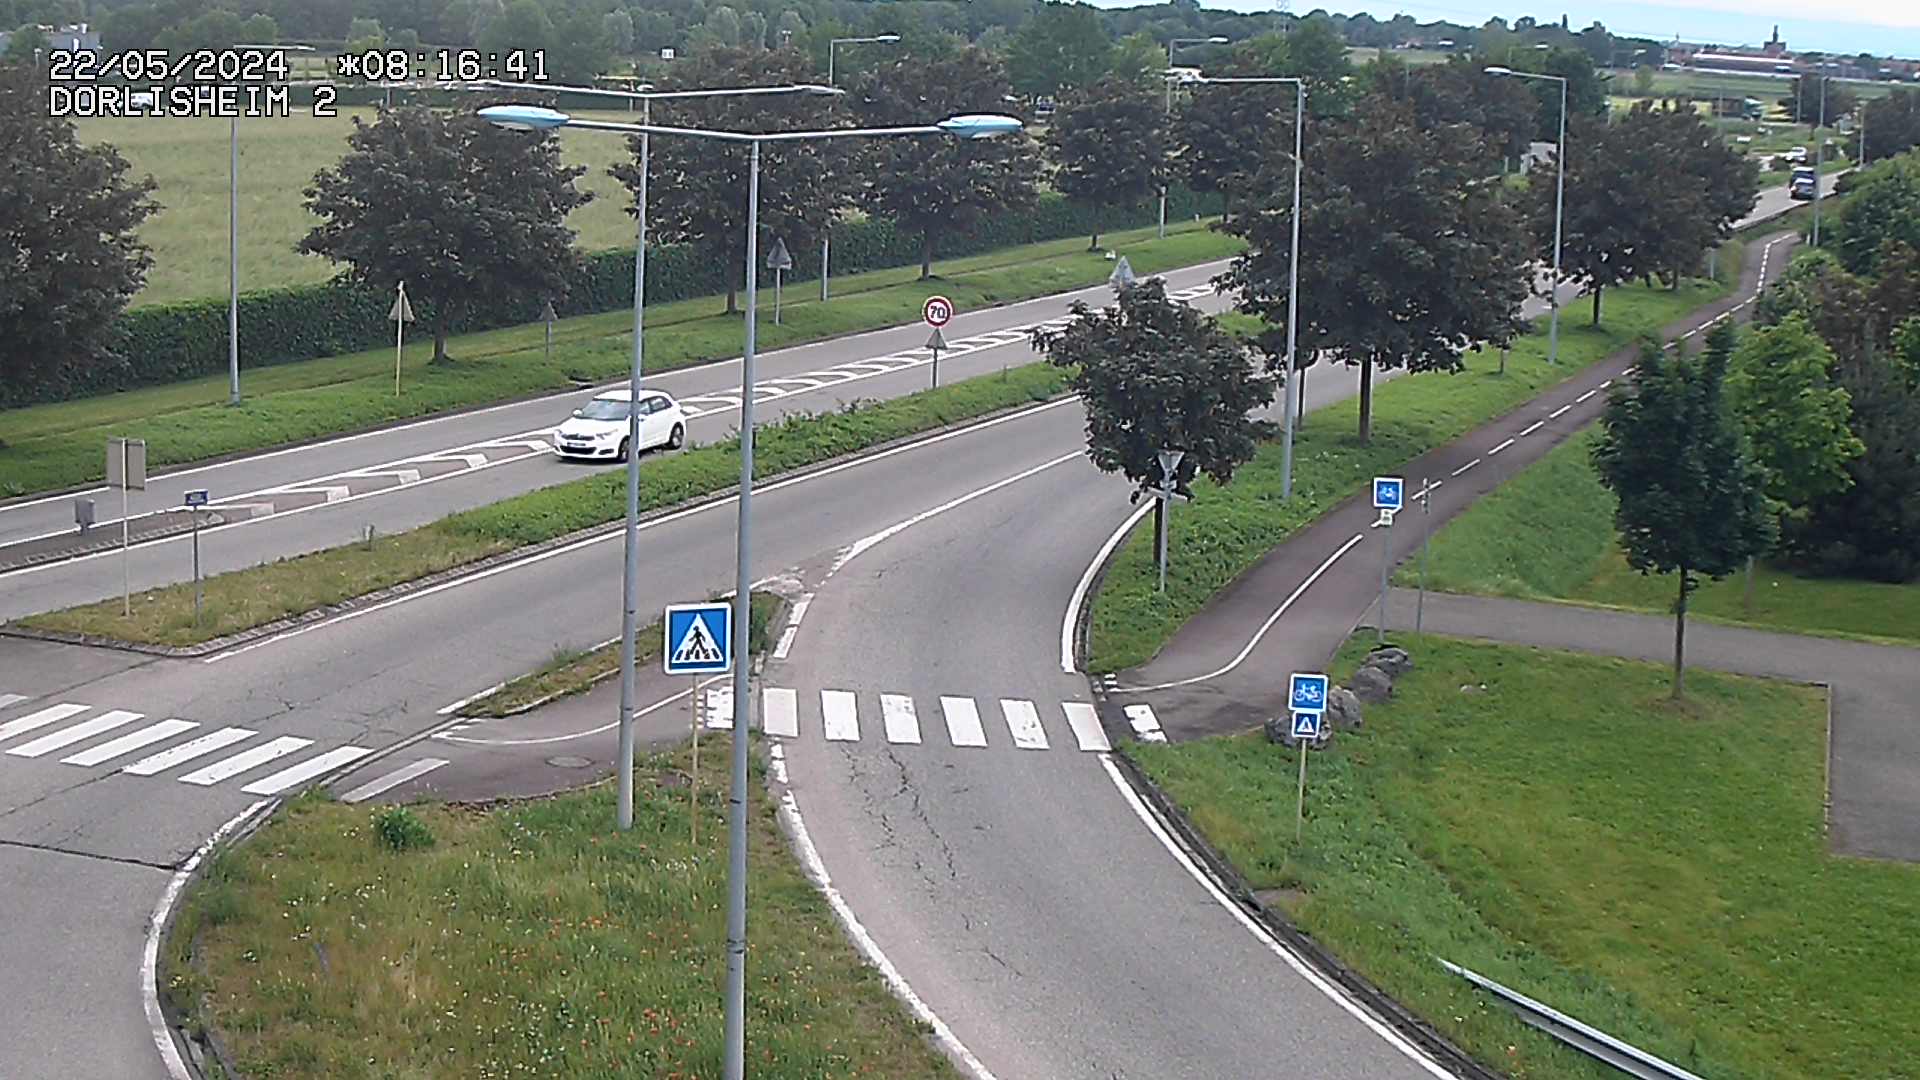 Webcam à Dorlisheim, au sud de Molsheim, au niveau du rond-point menant à l'A352. Caméra située à la jonction entre la D392, la D500 et la D2422. Vue orientée vers Altorf et Strasbourg